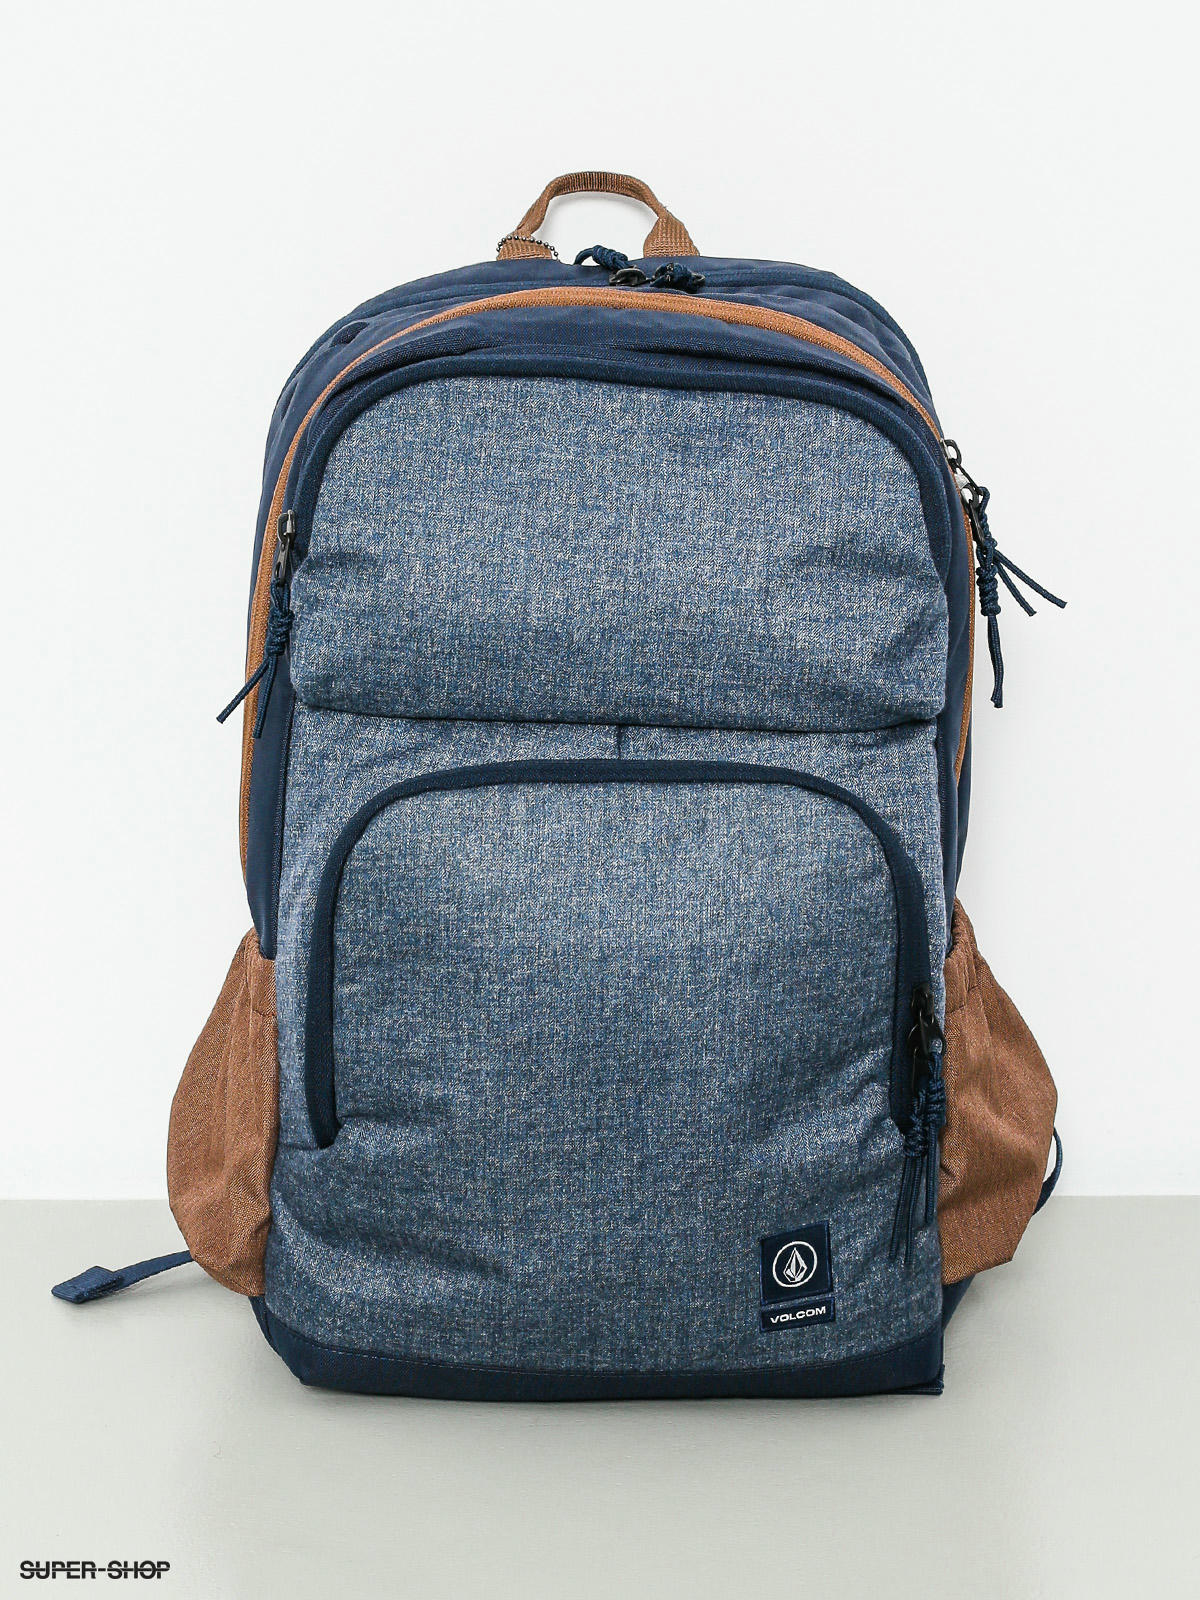 volcom backpack